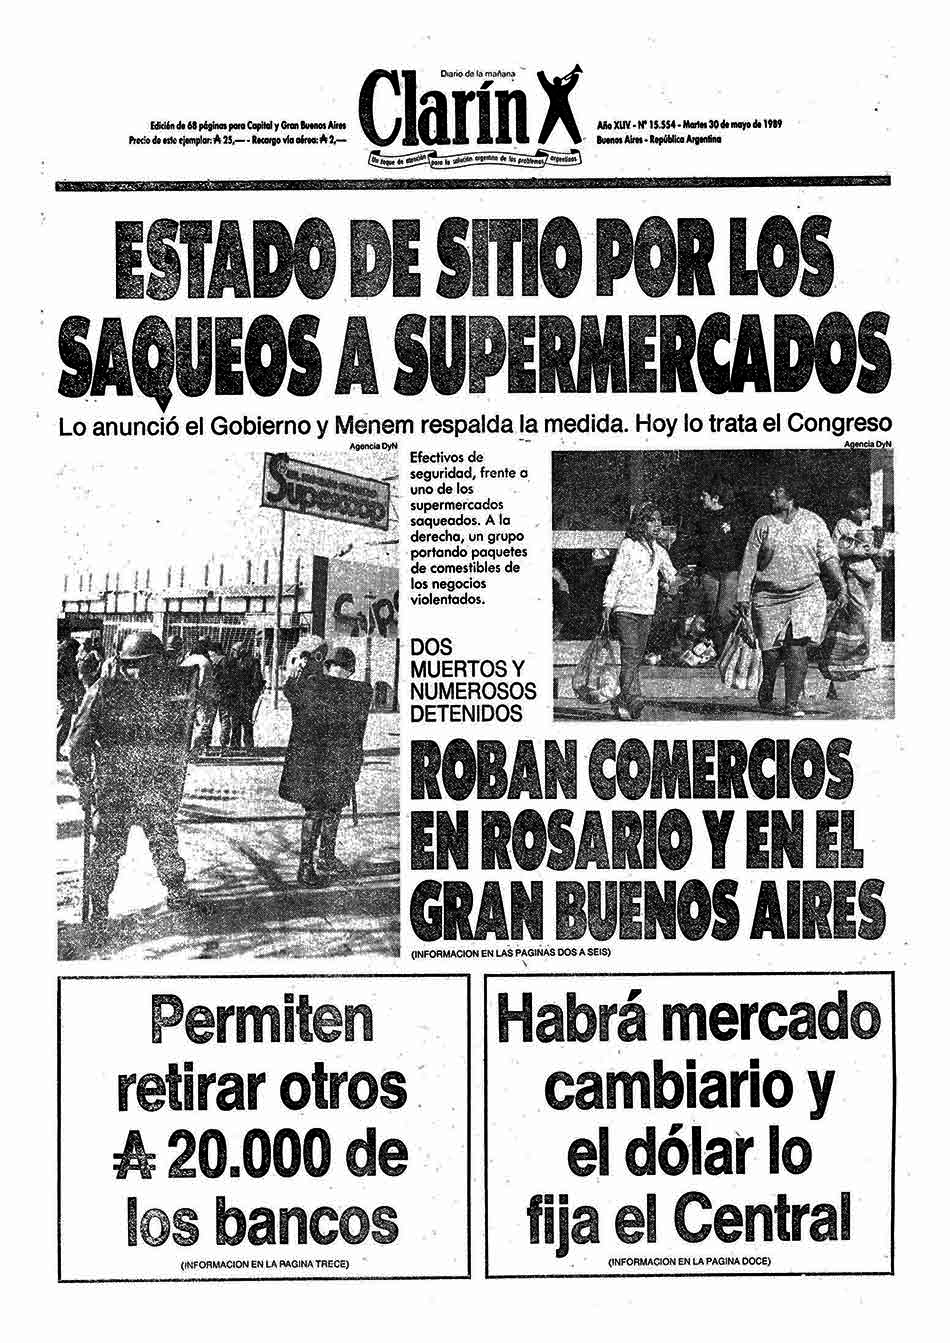 Imagen Portada de Clarín. Saqueos 1989